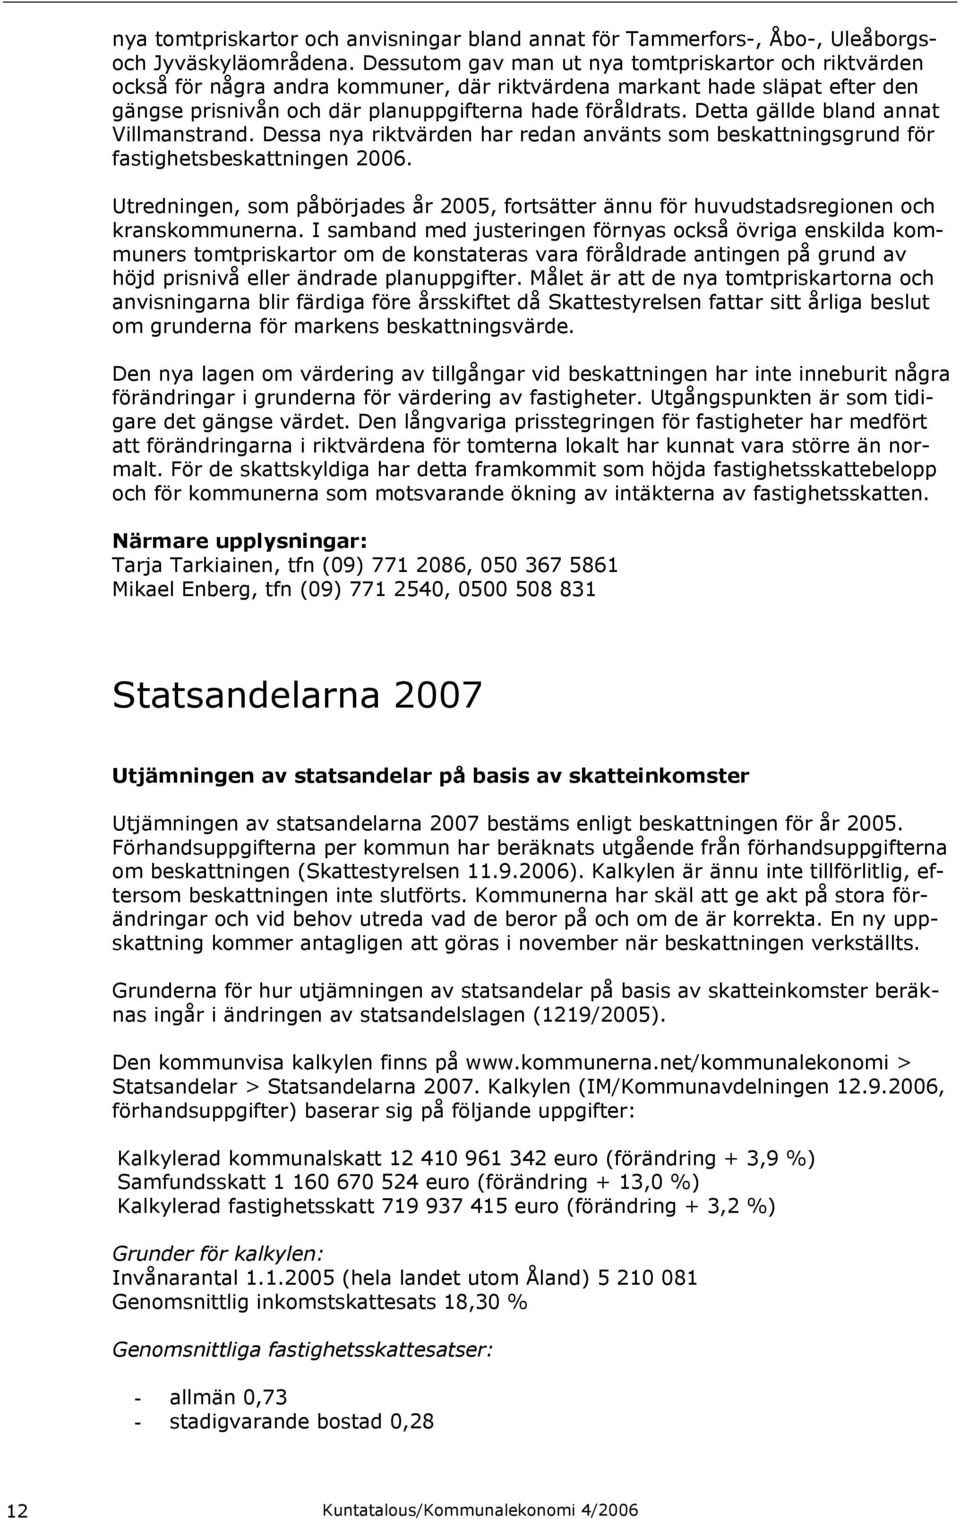 Detta gällde bland annat Villmanstrand. Dessa nya riktvärden har redan använts som beskattningsgrund för fastighetsbeskattningen 2006.